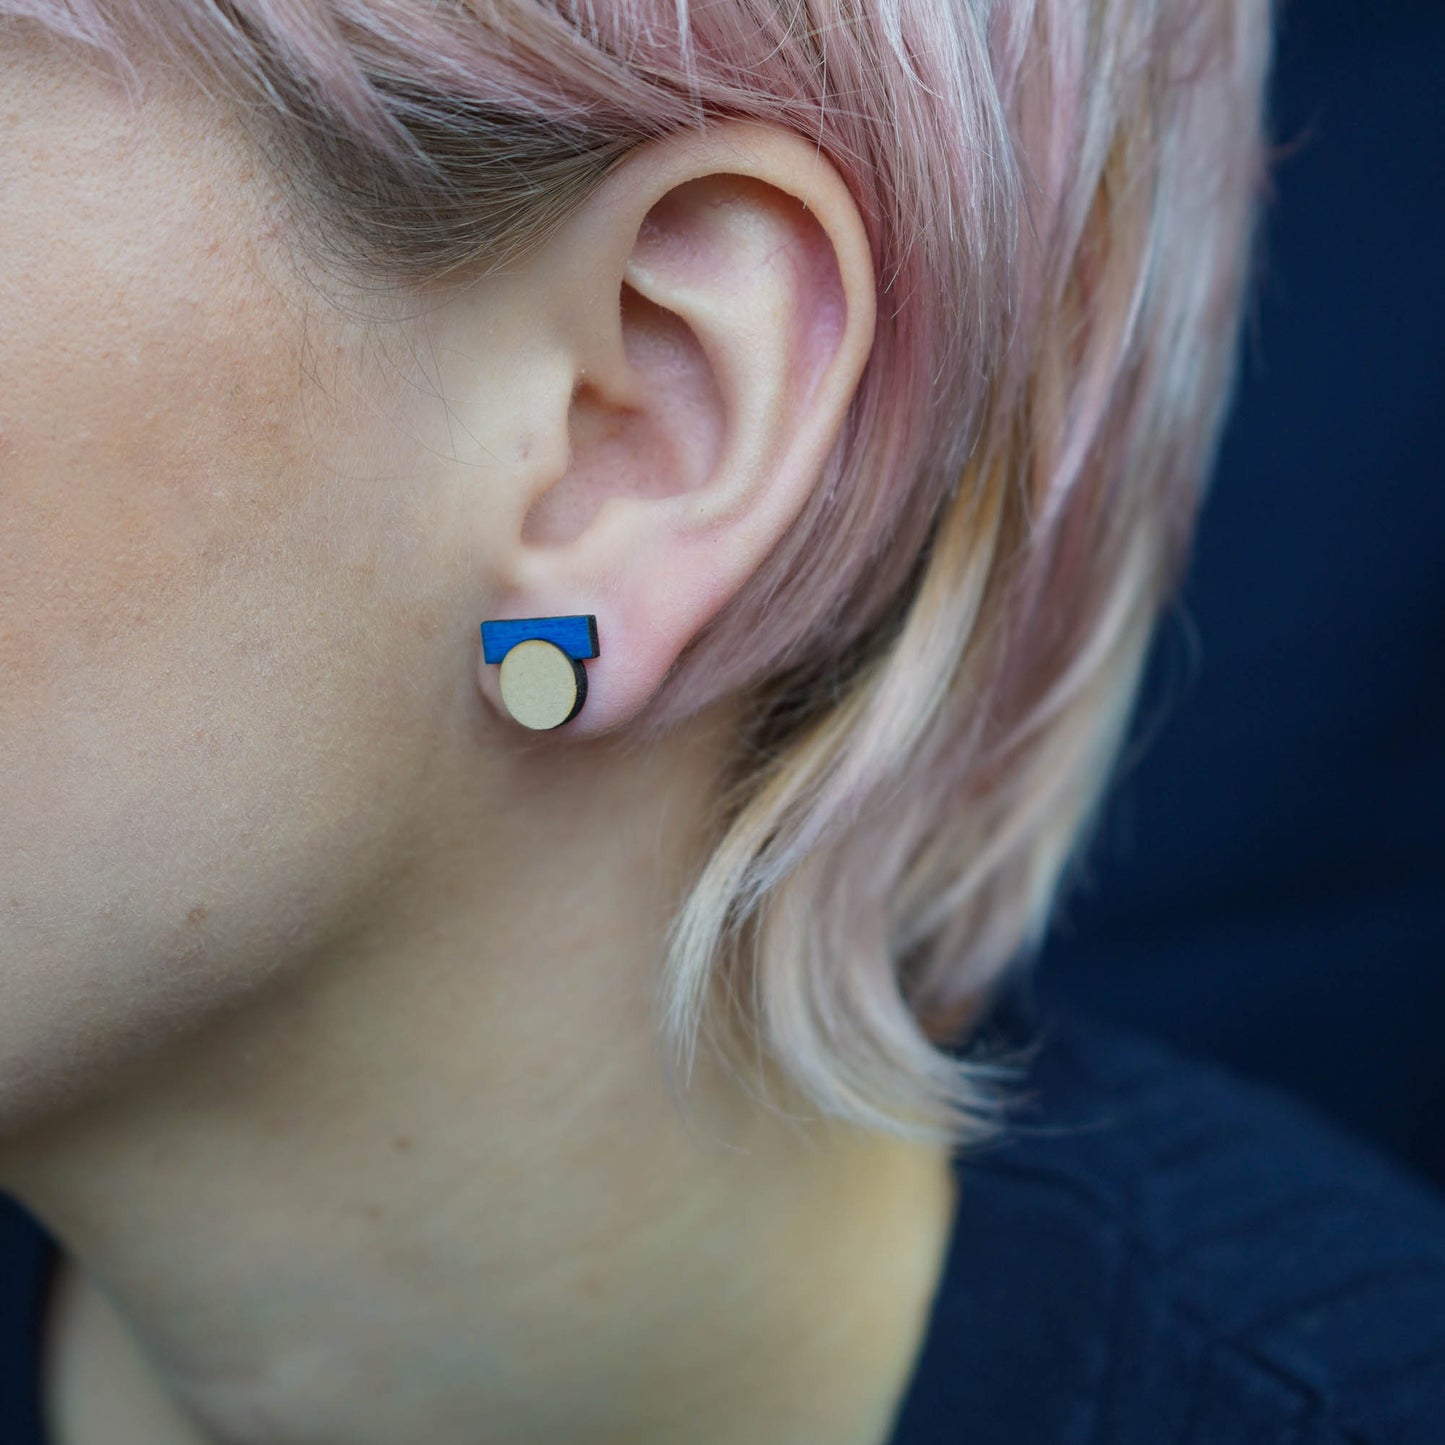 Malevich Earrings Blue